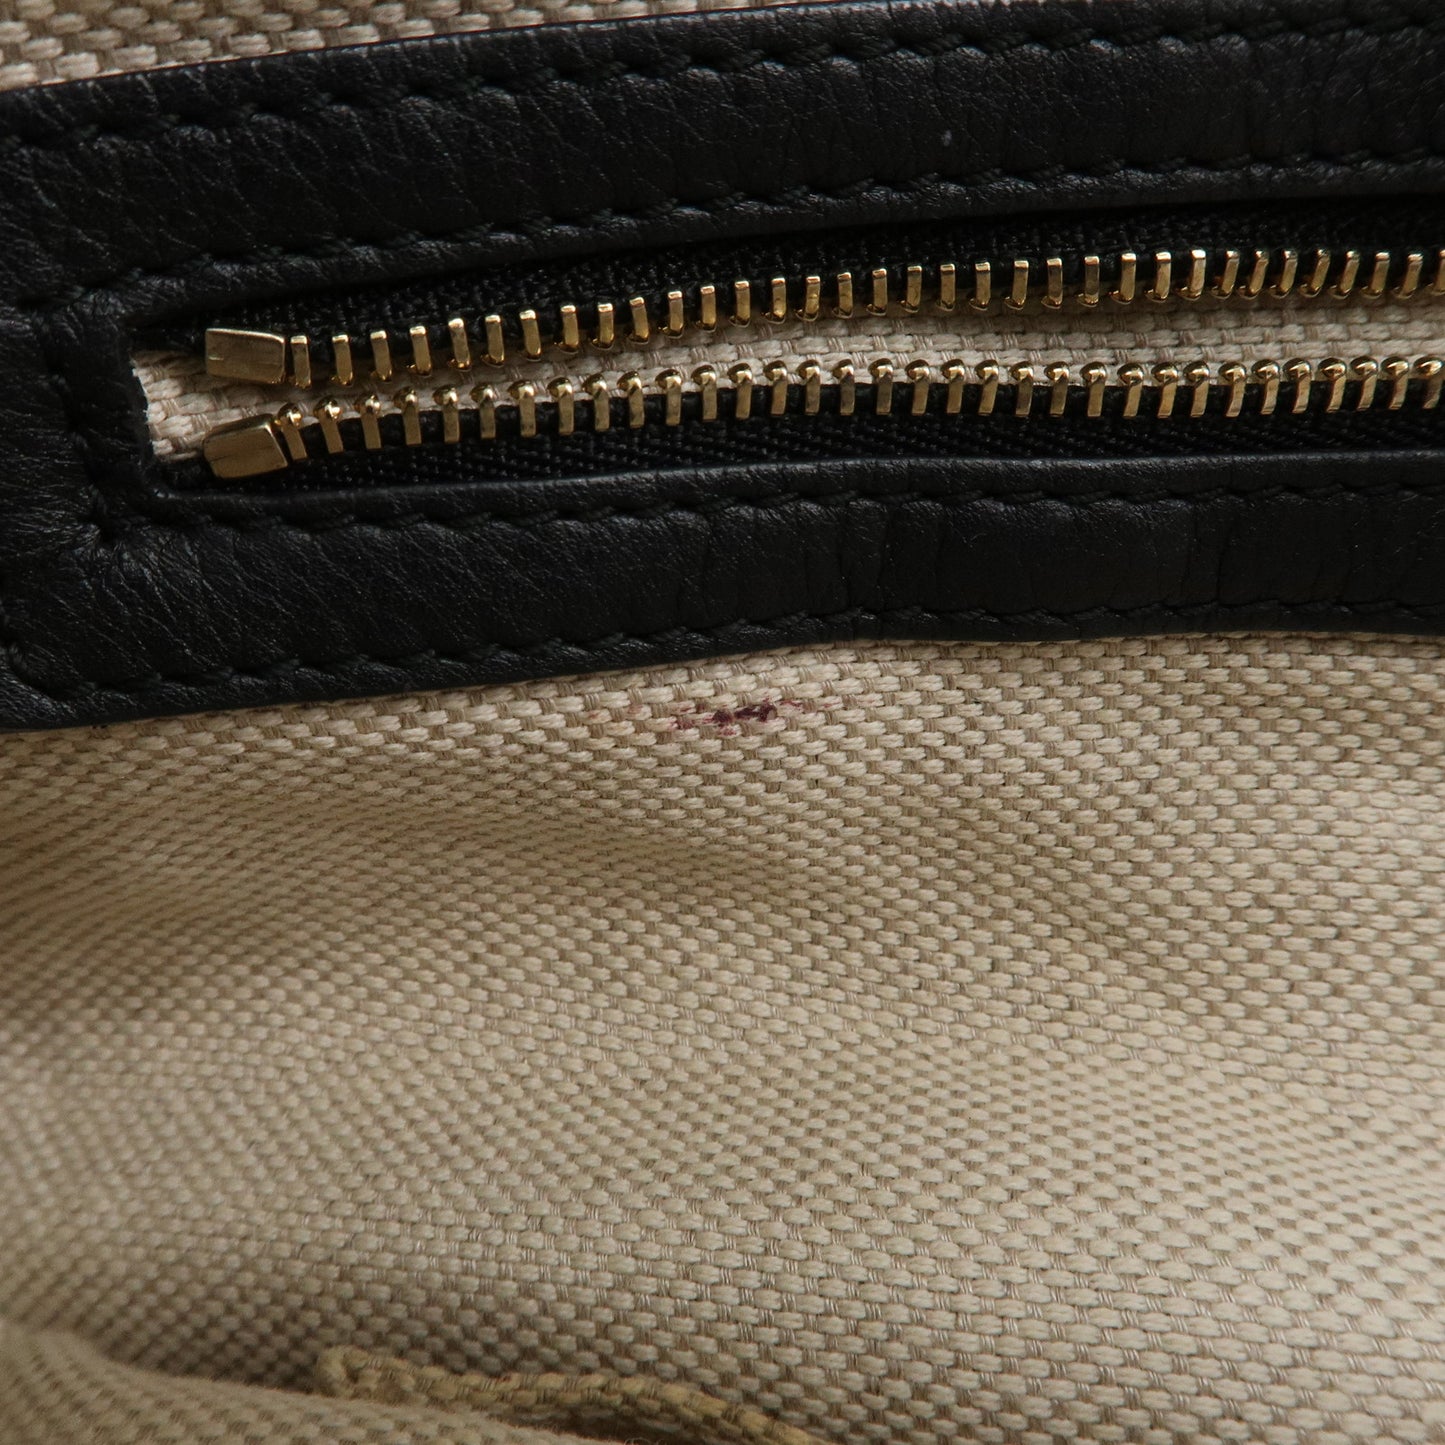 GUCCI SOHO Leather 2Way Shoulder Bag Black 308362